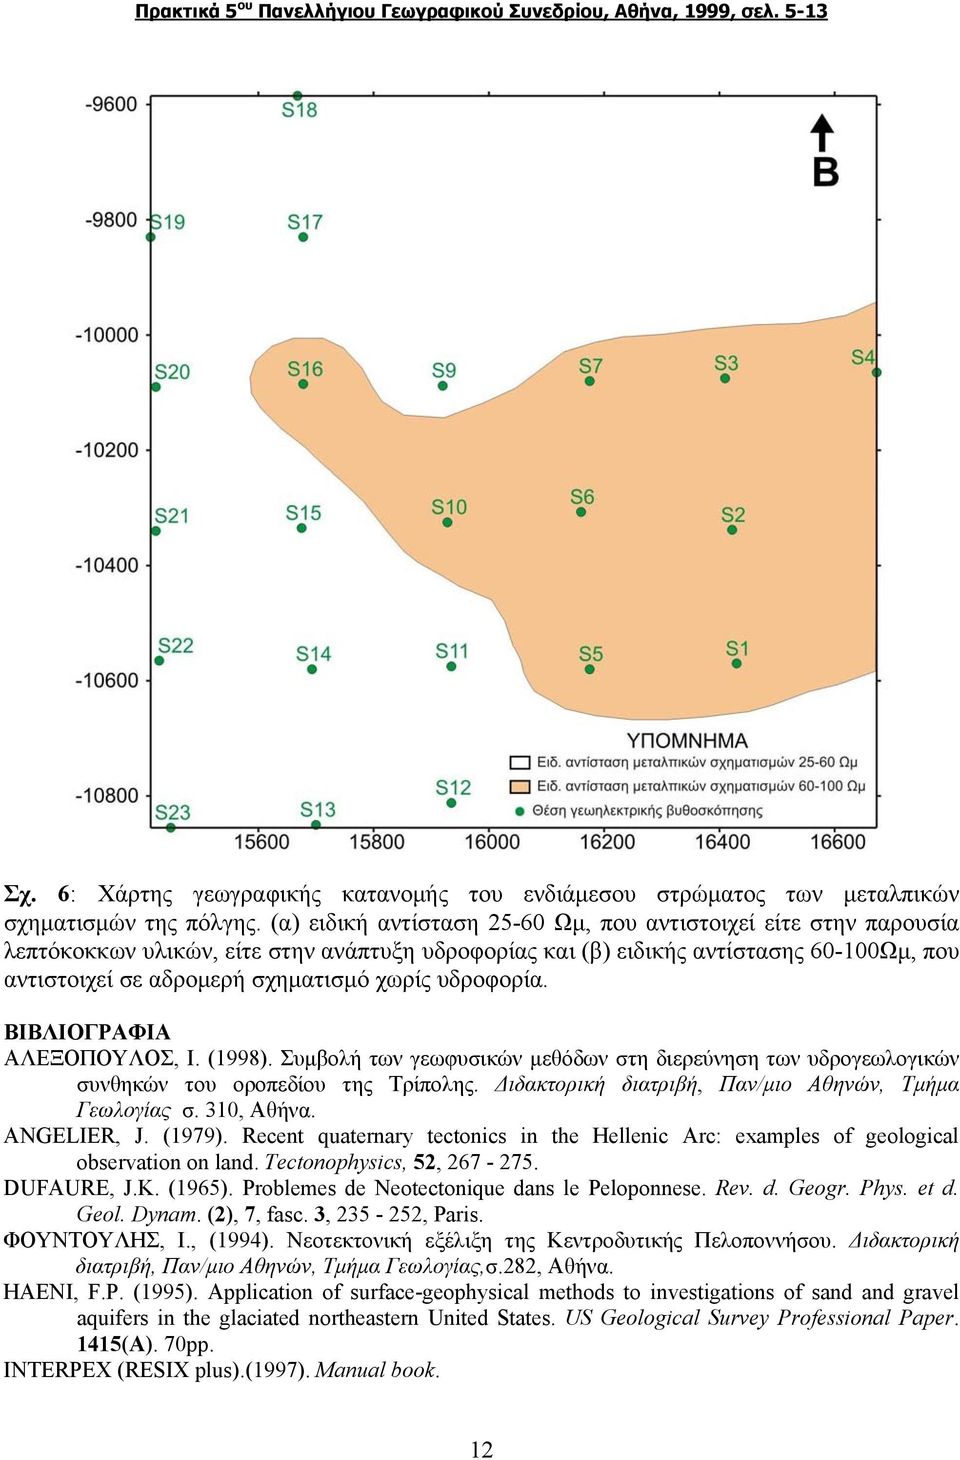 υδροφορία. ΒΙΒΛΙΟΓΡΑΦΙΑ ΑΛΕΞΟΠΟΥΛΟΣ, Ι. (1998). Συμβολή των γεωφυσικών μεθόδων στη διερεύνηση των υδρογεωλογικών συνθηκών του οροπεδίου της Τρίπολης.